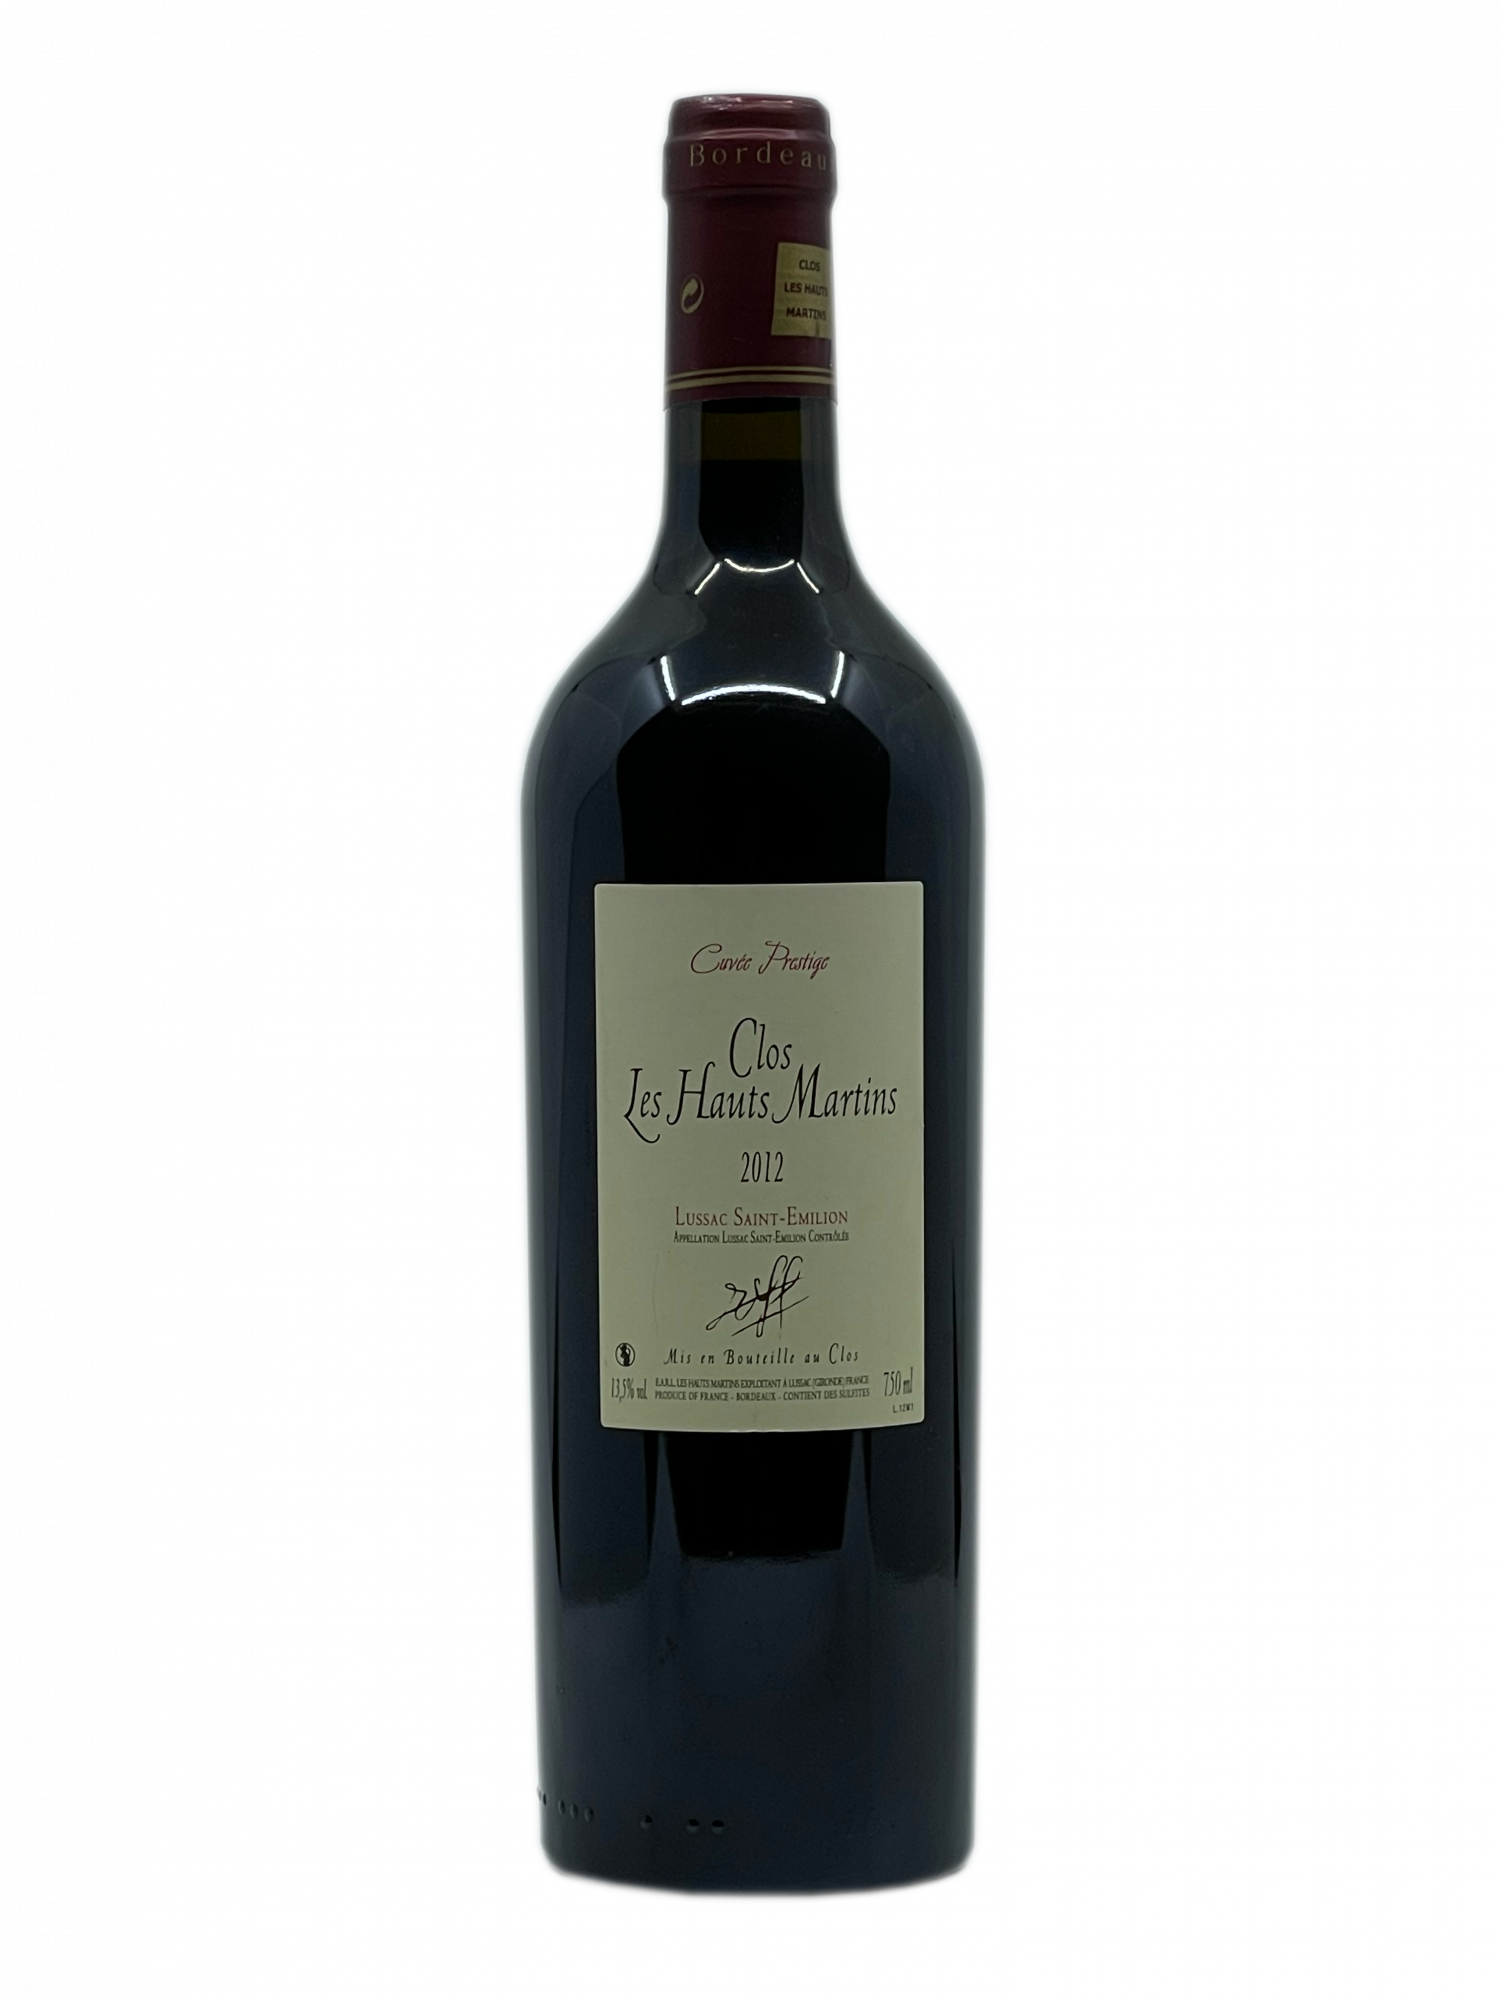 Bordeaux Merlot Sauvignon cuvaison longues barrique fût de chêne boisée élégance vieilles vignes prestiges